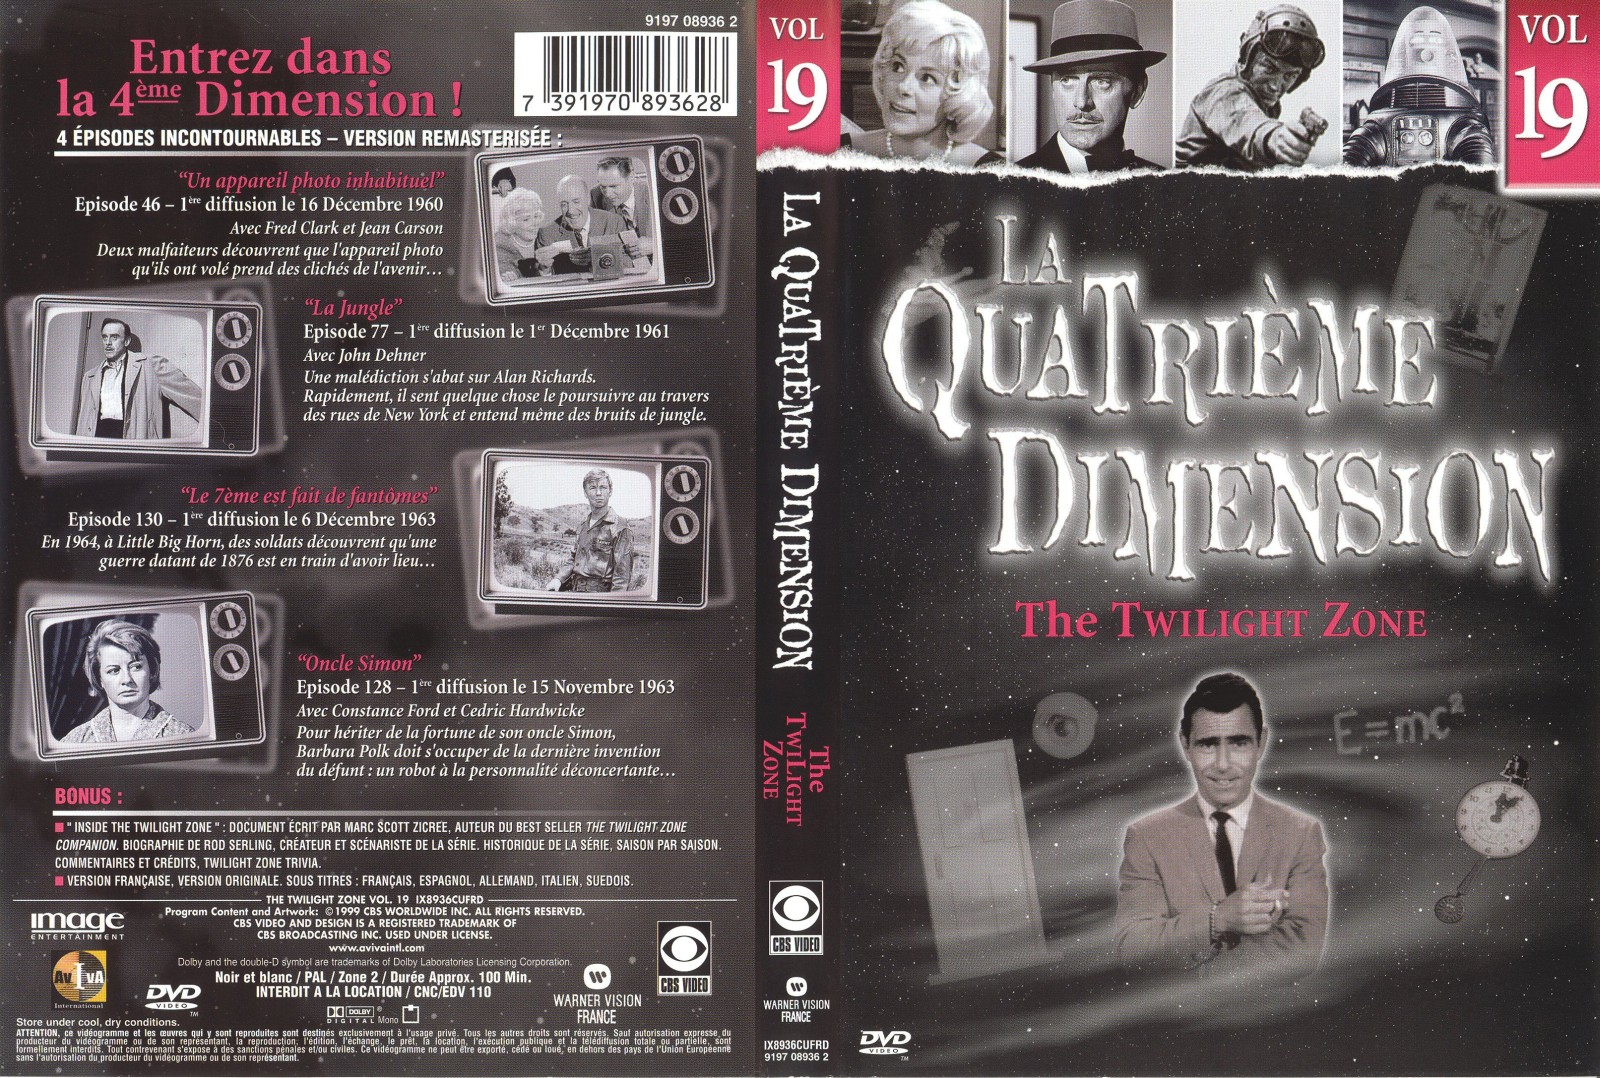 Jaquette DVD La quatrieme dimension vol 19